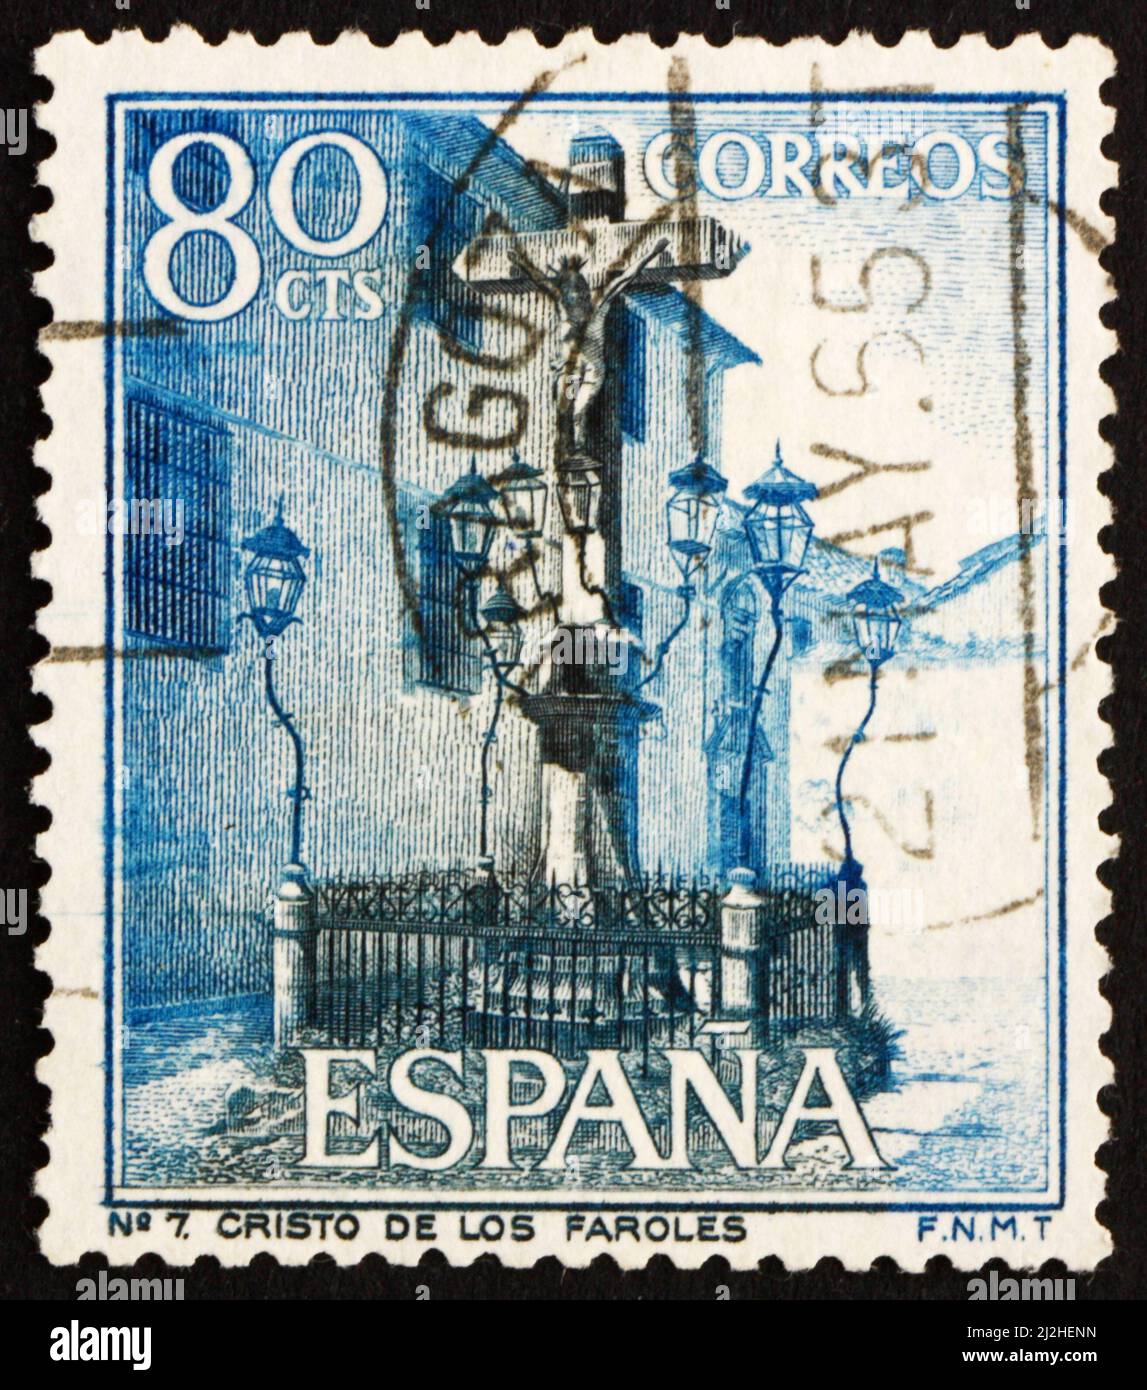 SPANIEN - UM 1964: Eine in Spanien gedruckte Briefmarke zeigt Christus der Laternen, Cordova, Spanien, um 1964 Stockfoto